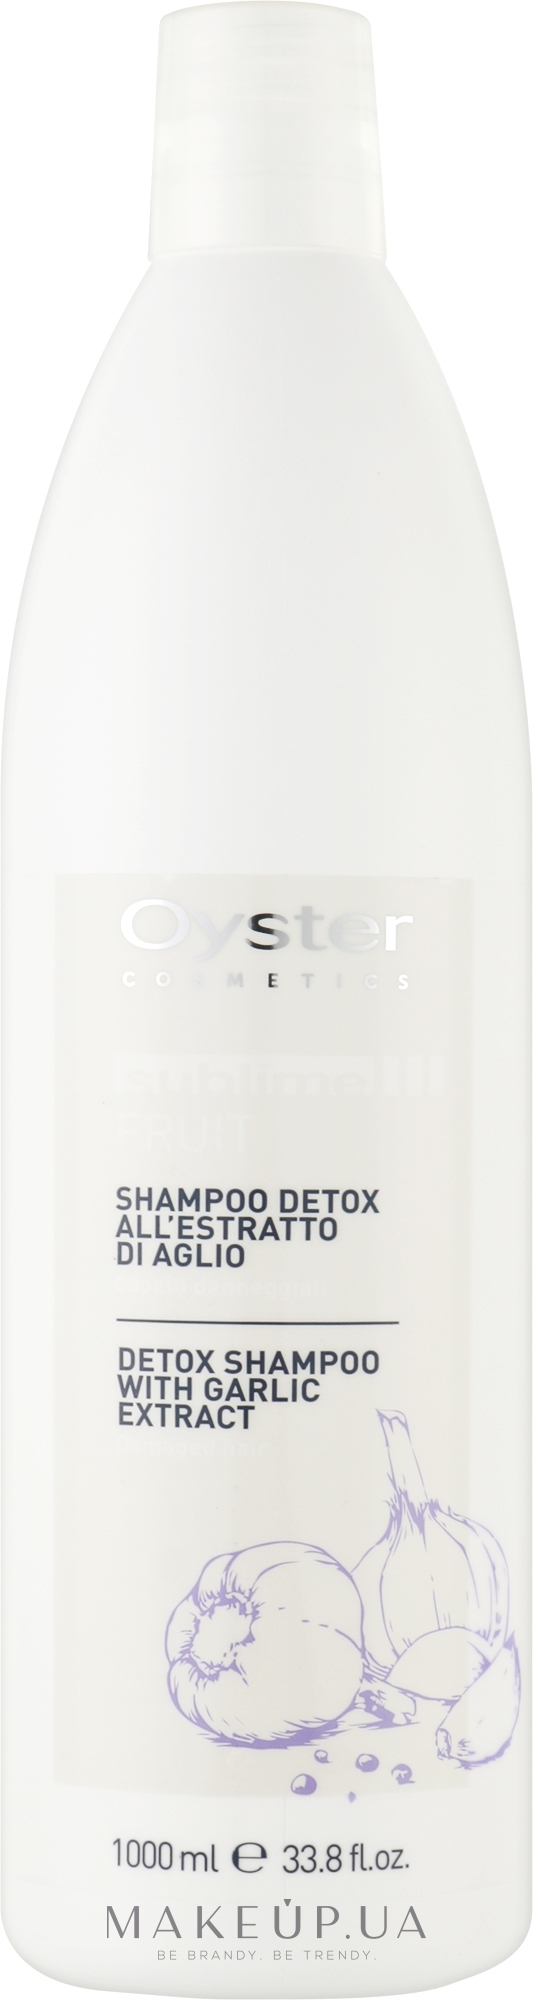 Шампунь, очищающий с экстрактом чеснока - Oyster Cosmetics Sublime Fruit Shampoo Detox — фото 1000ml